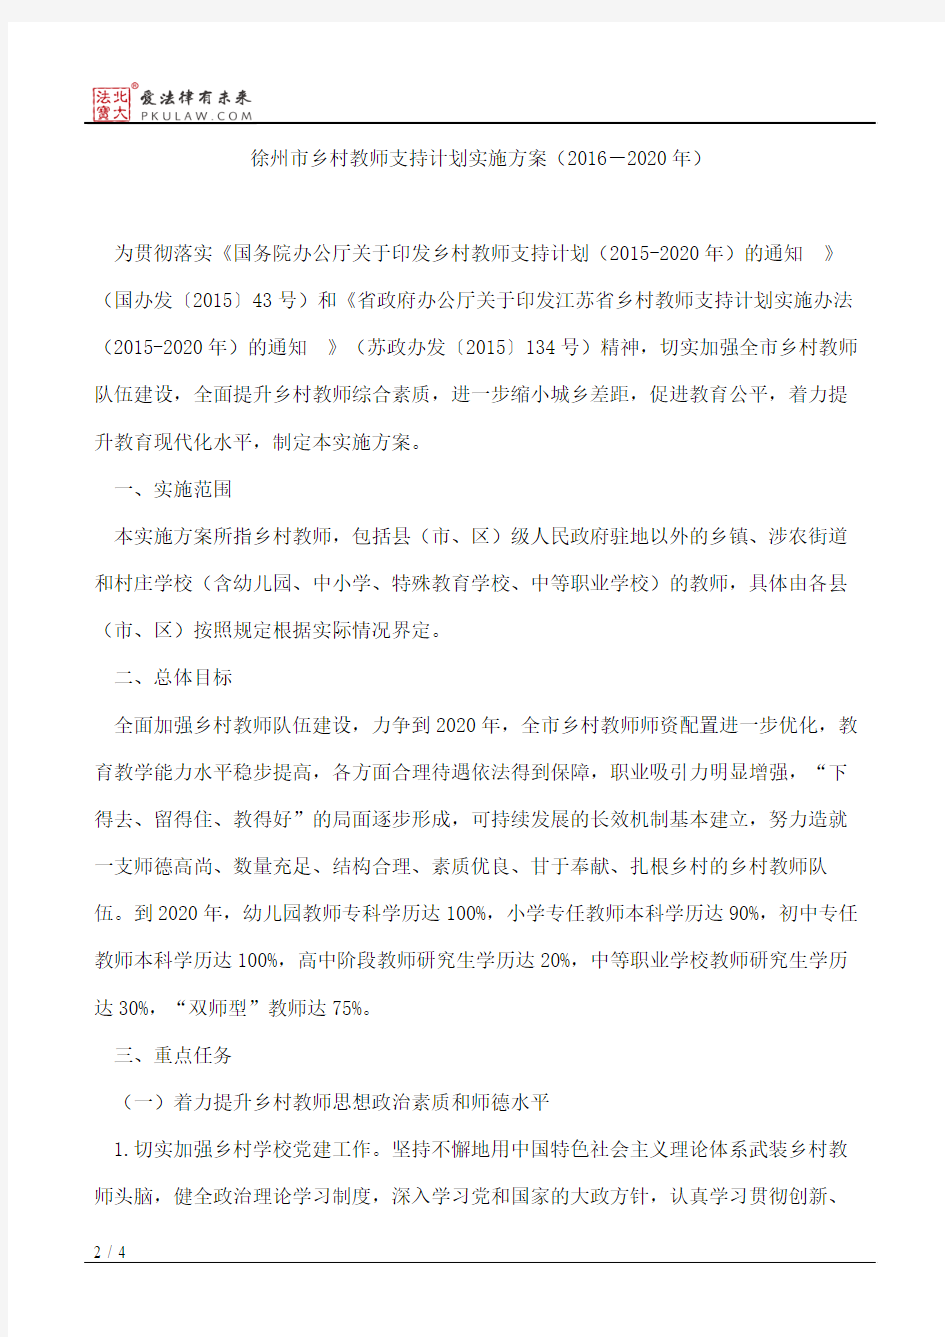 徐州市政府办公室关于印发徐州市乡村教师支持计划实施方案(2016-2